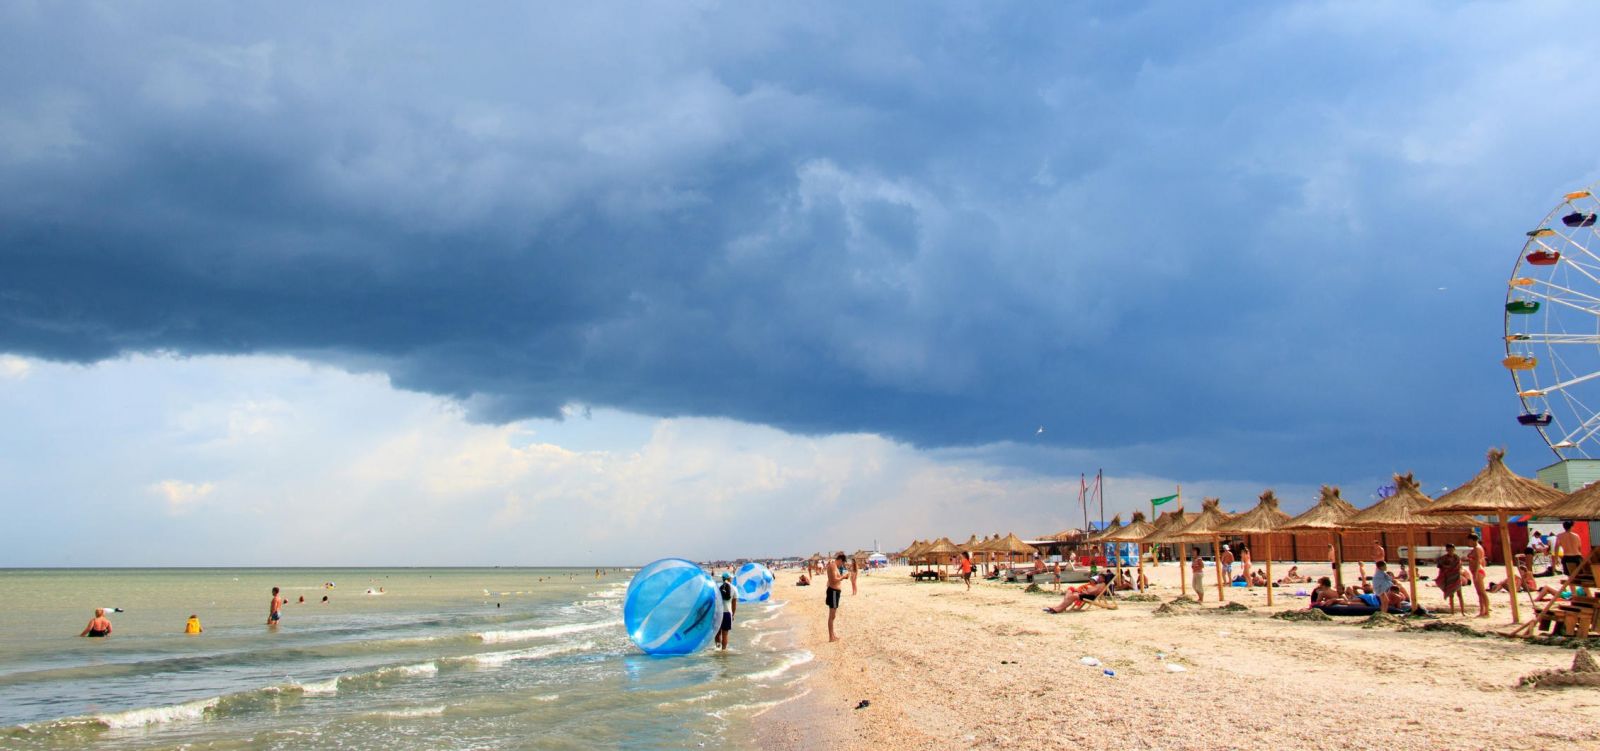 Центральный пляж в Кирилловке освободят от шезлонгов и навесов: подробности